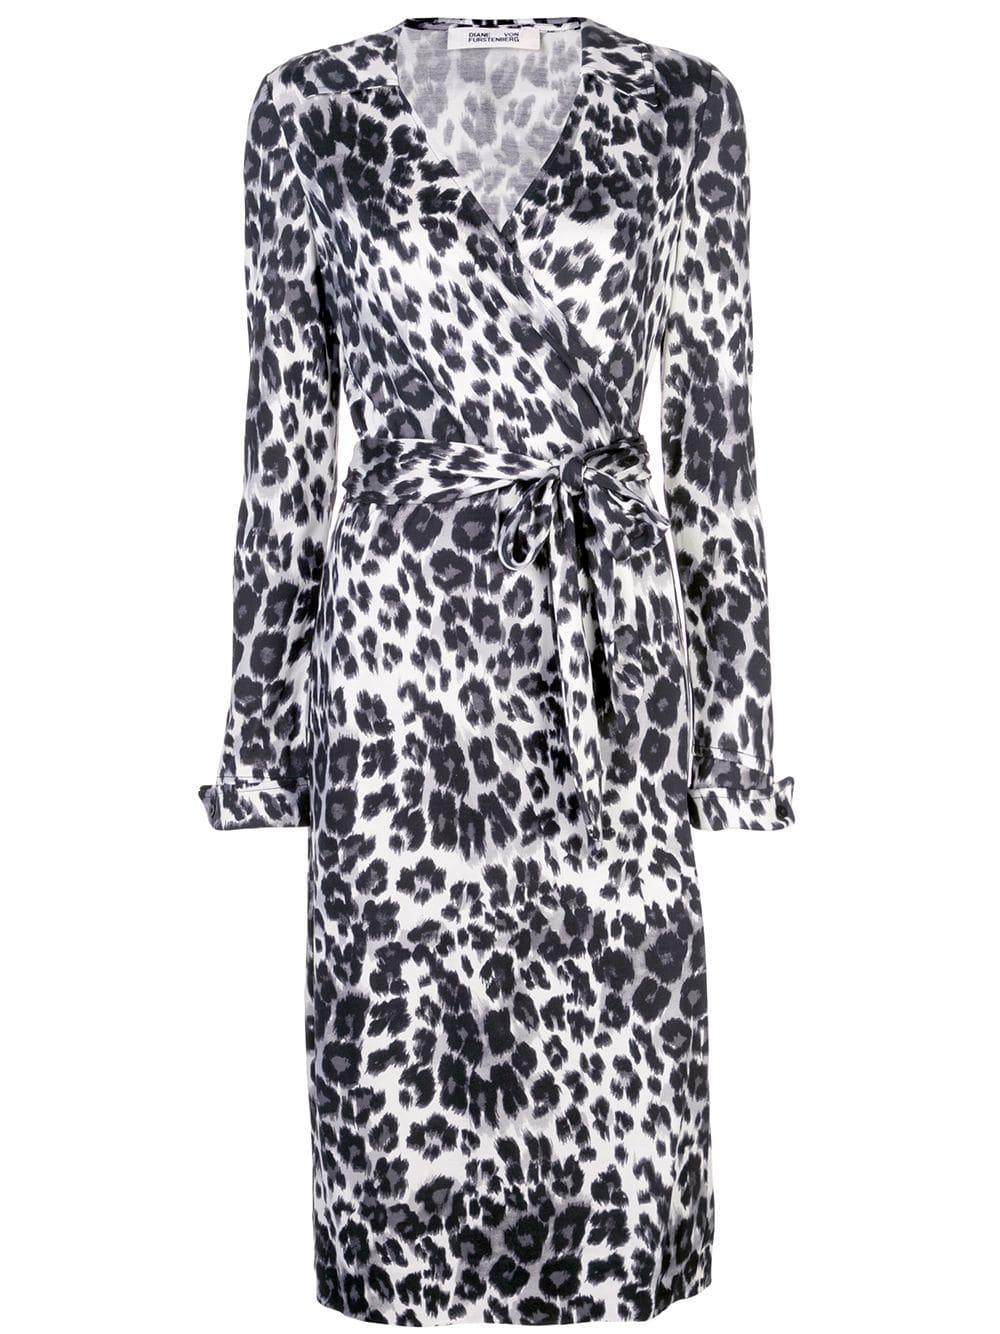 Diane von Furstenberg Leopard-print Wrap Dress in Black - Lyst